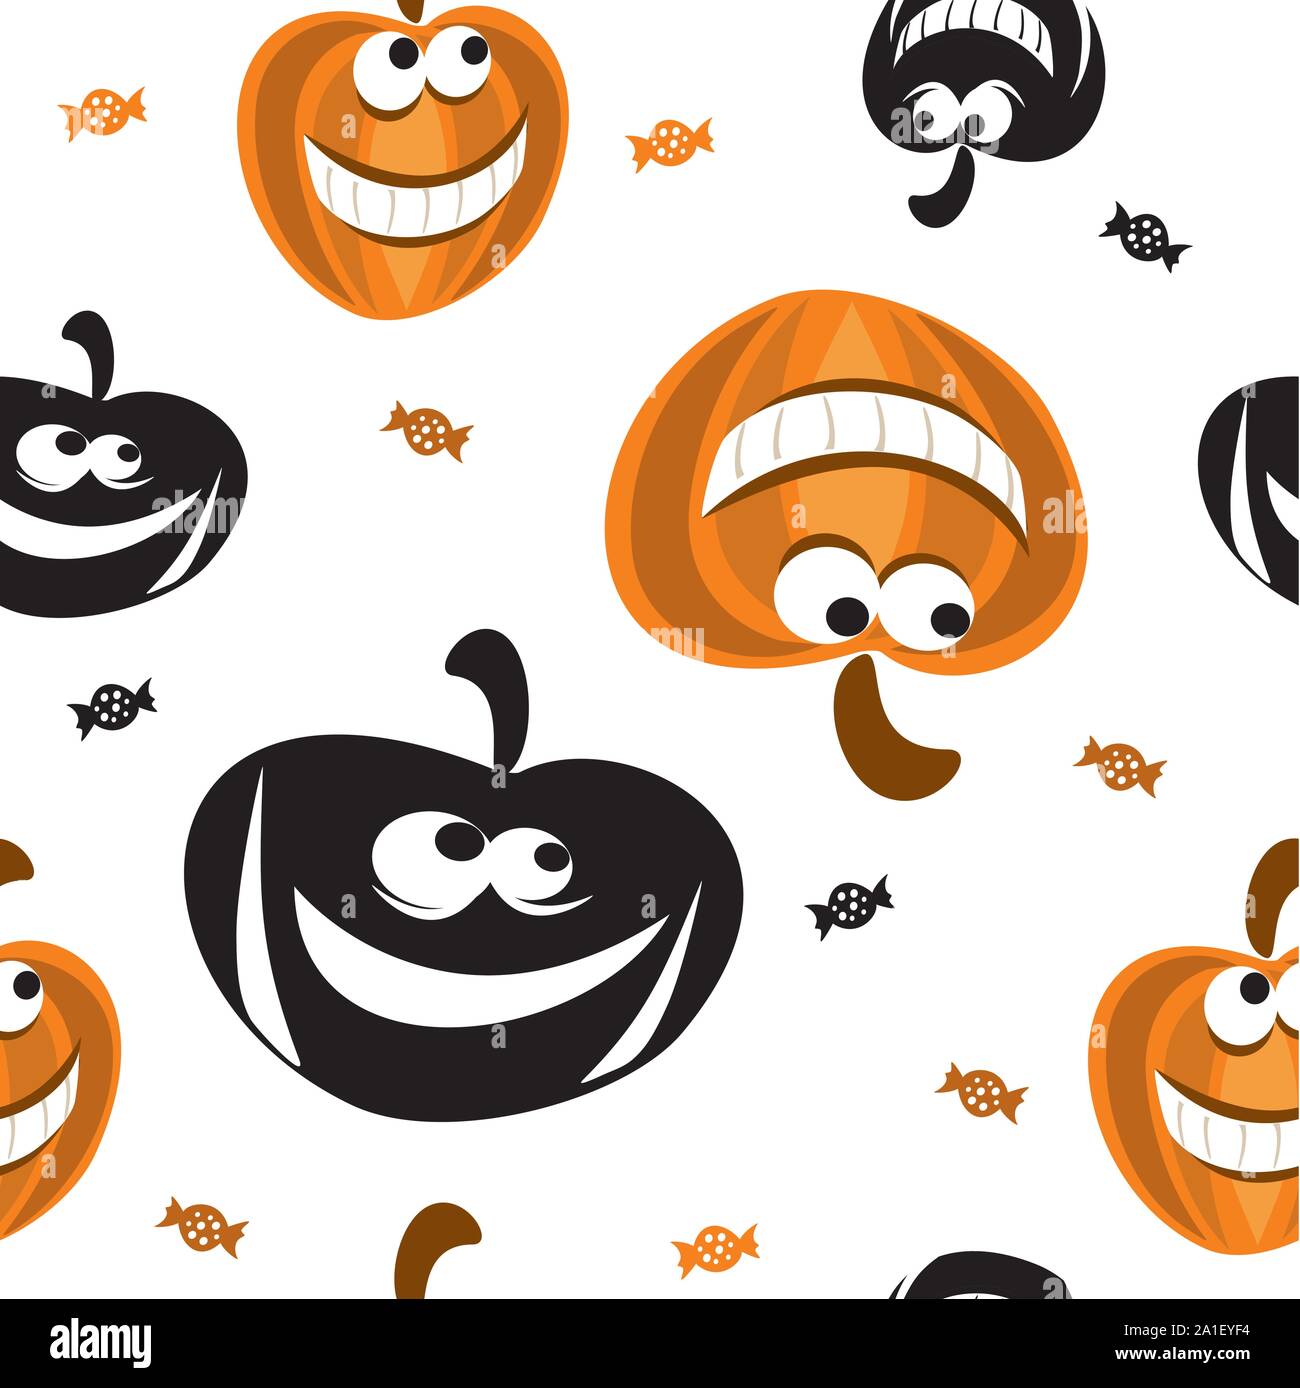 Vektor nahtlose Muster mit unterschiedlichen Form Halloween Kürbis in schwarz und orange Farben und Süßigkeiten auf weißem Hintergrund, Stock Illustration für Desig Stock Vektor